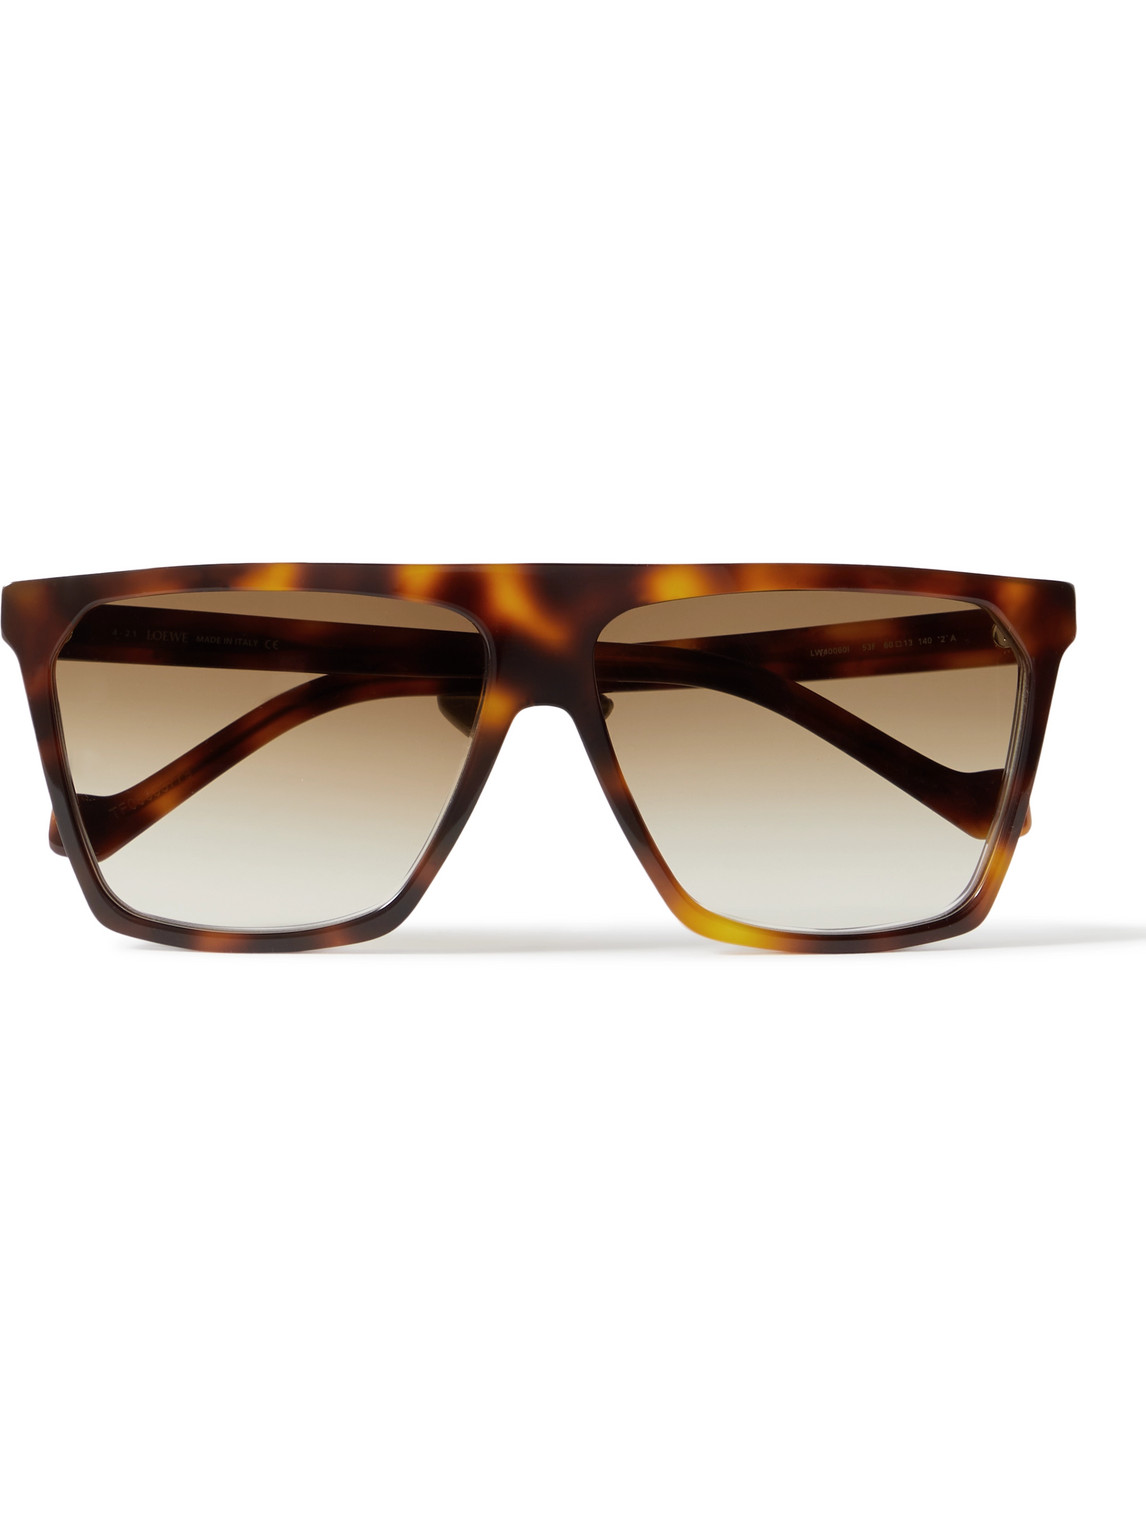 Loewe D-frame Tortoiseshell Acetate Sunglasses